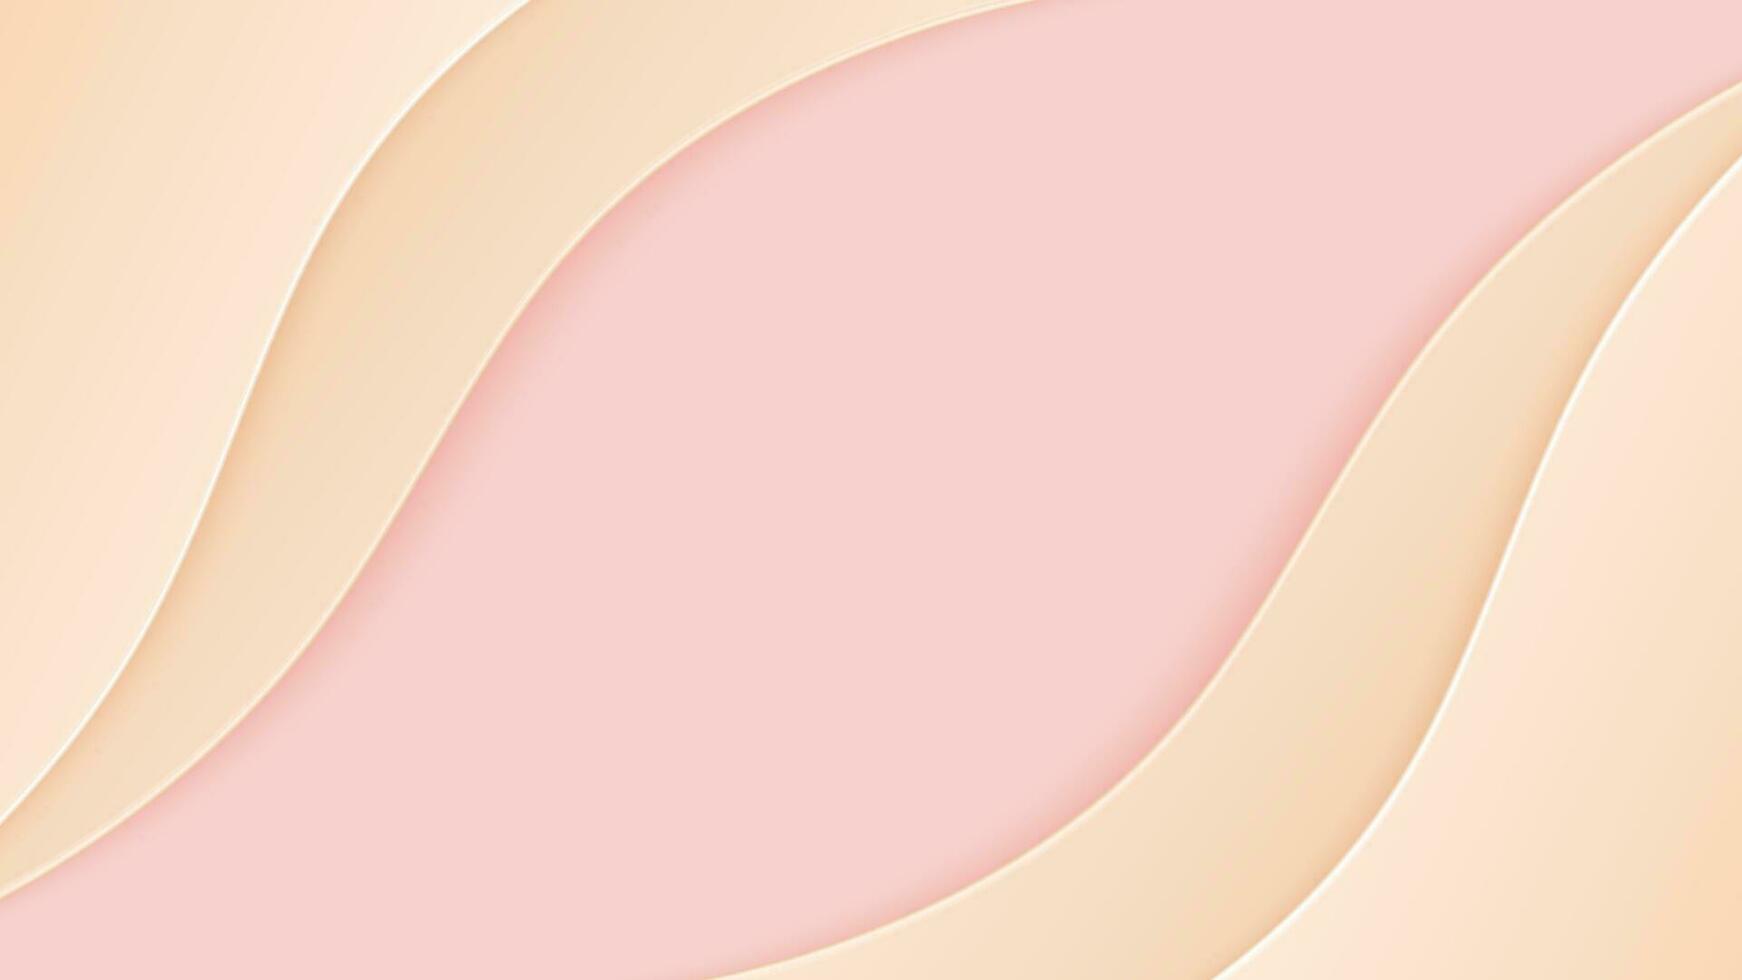 astratto carta arte rosa e Marrone pastello colorato tonalità della pelle linea curva sfondo design. vettore illustrazione